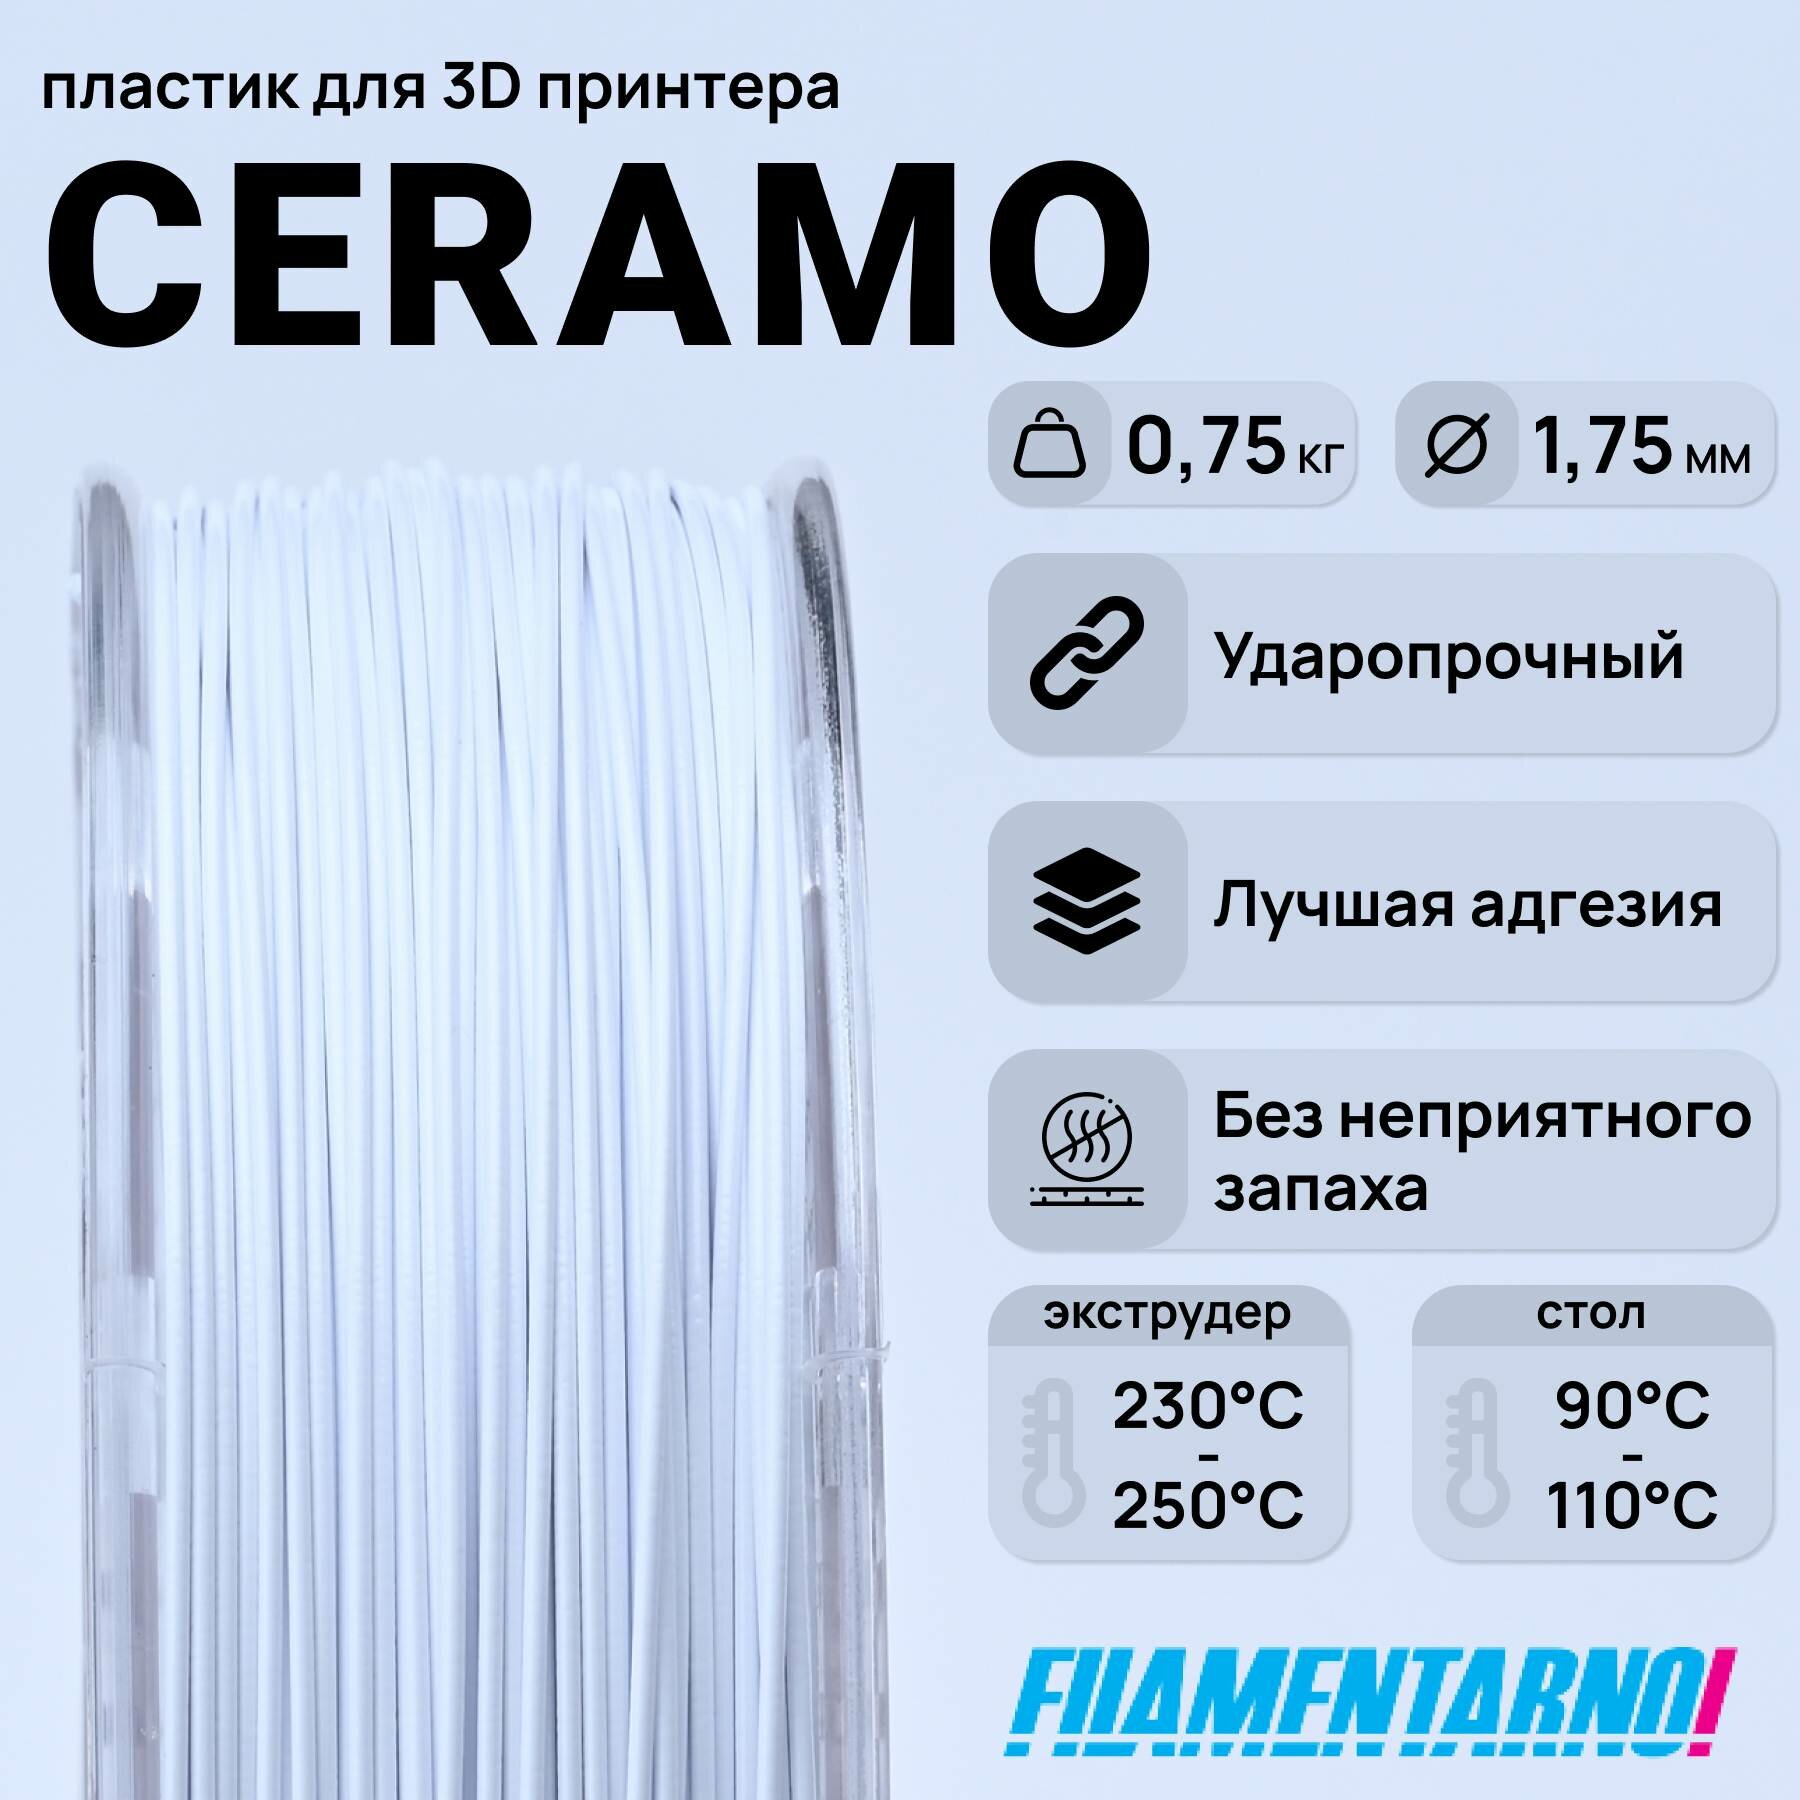 SAN Ceramo белый 750 г, 1,75 мм, пластик Filamentarno для 3D-принтера